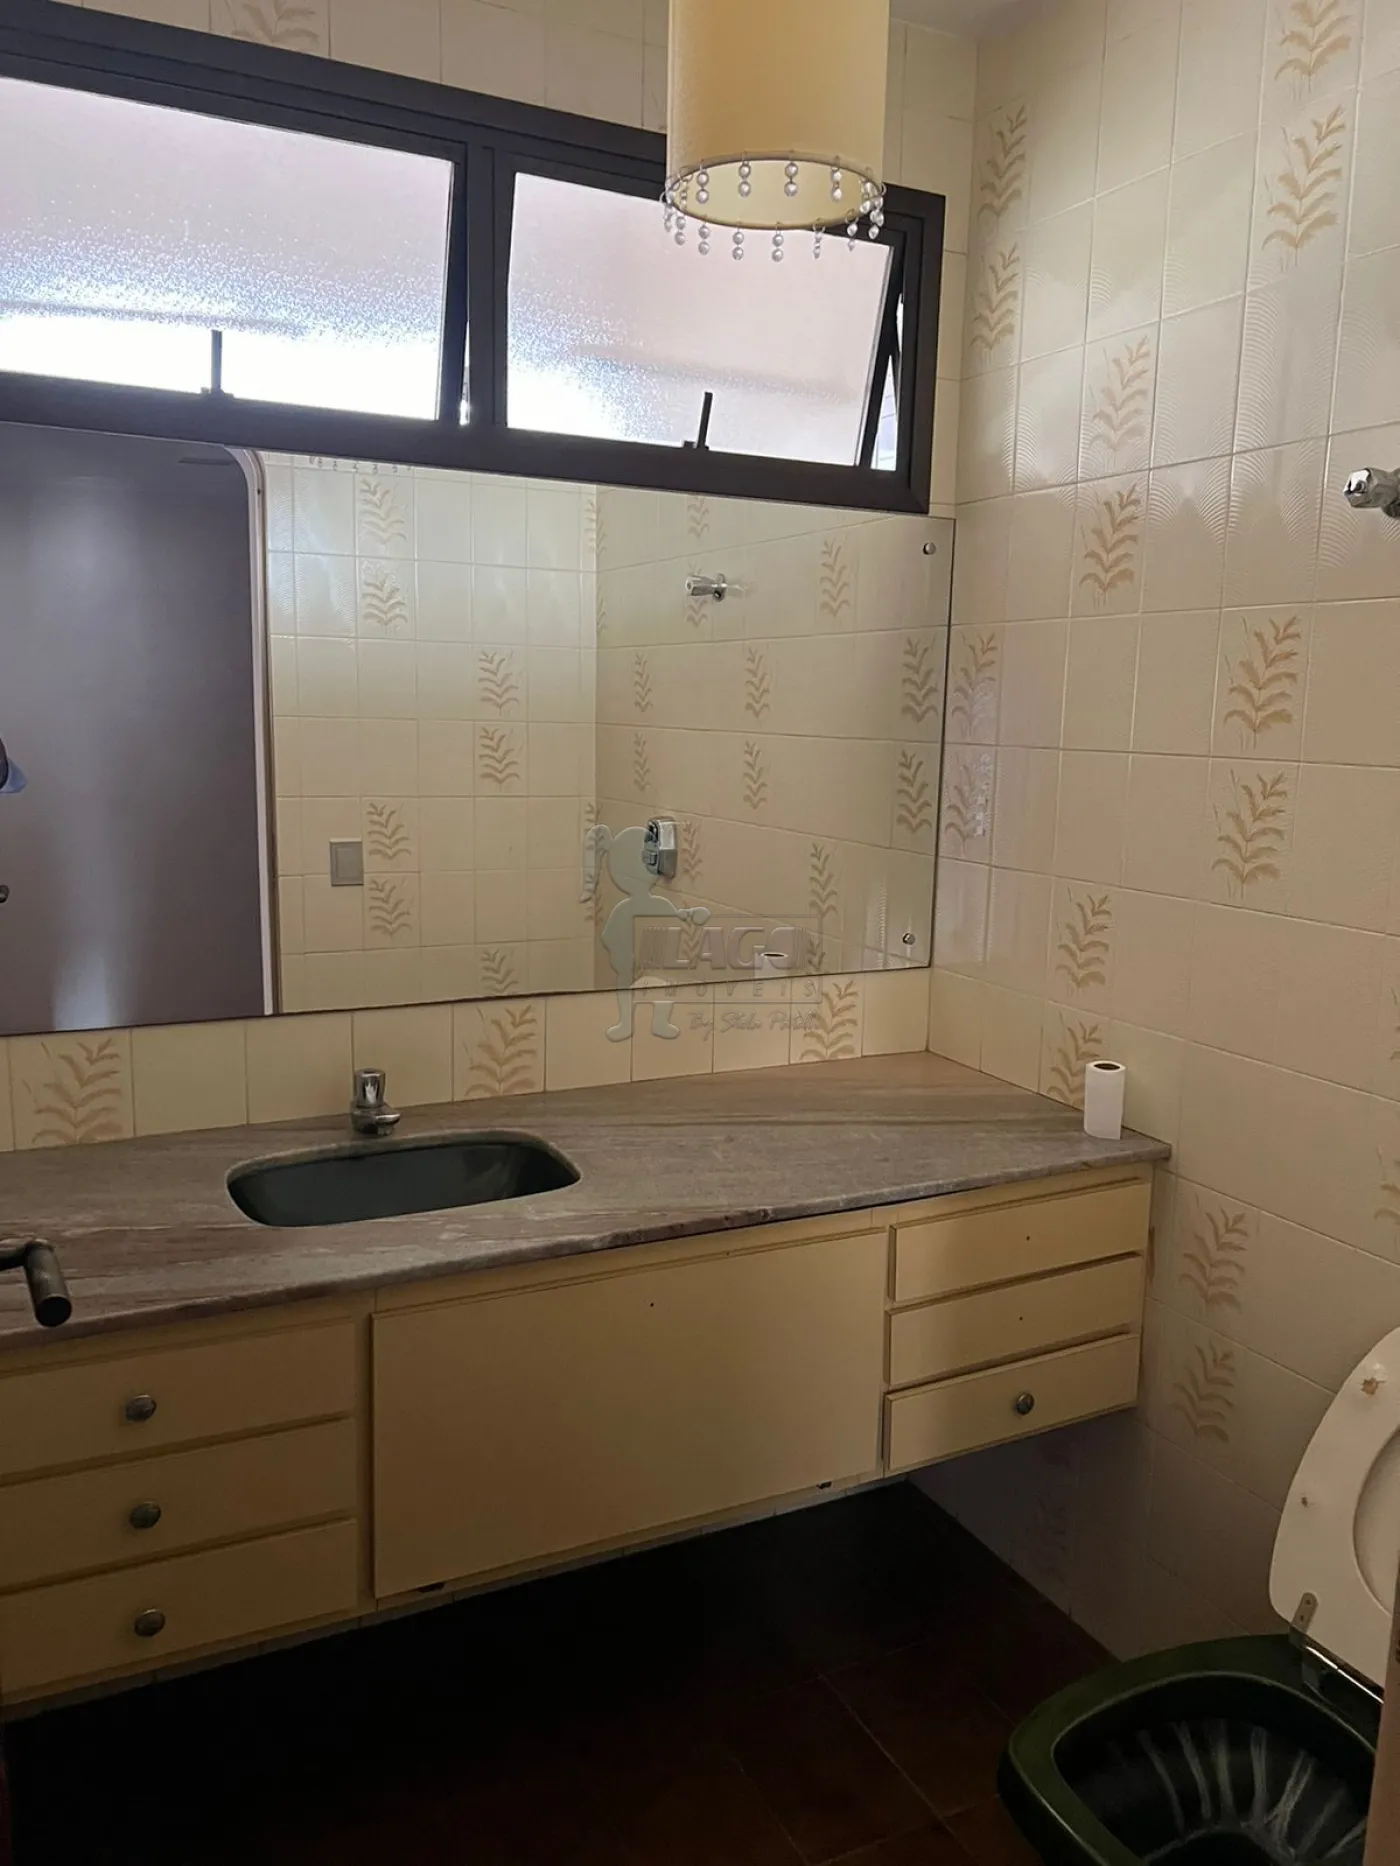 Comprar Apartamentos / Padrão em Ribeirão Preto R$ 400.000,00 - Foto 13